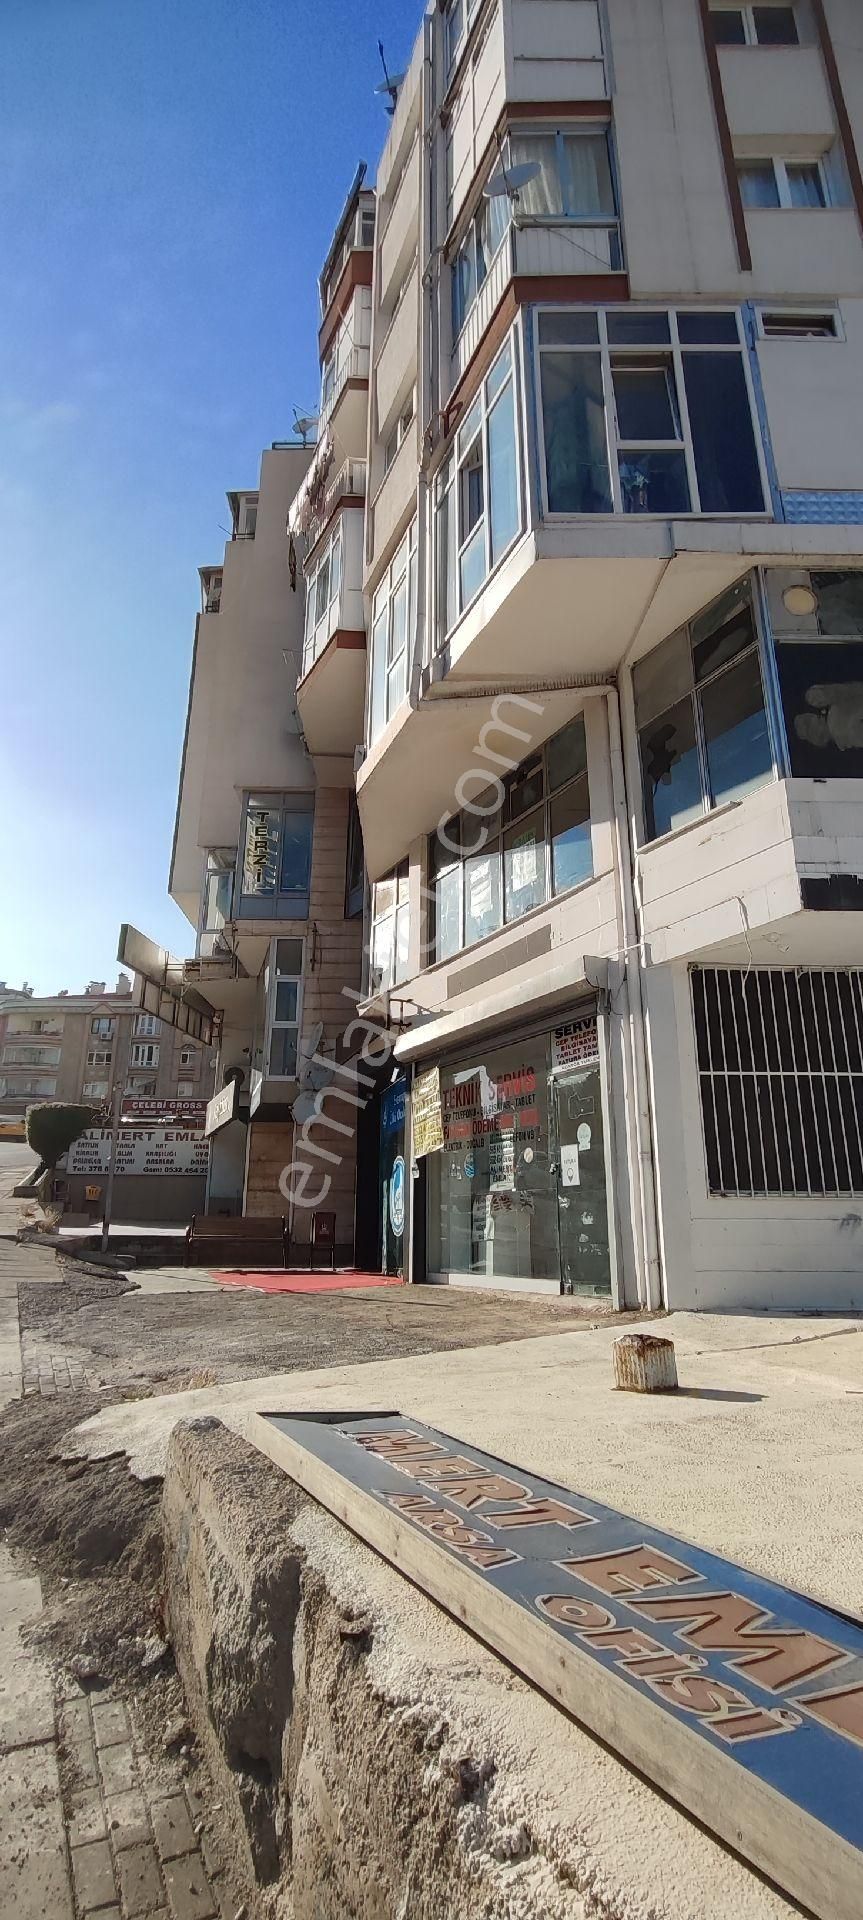 Ankara Keçiören Kiralık Dükkan & Mağaza Esertepe Merkezde Cadde Üzeri Alimert Emlakdan kiralık Dükkan